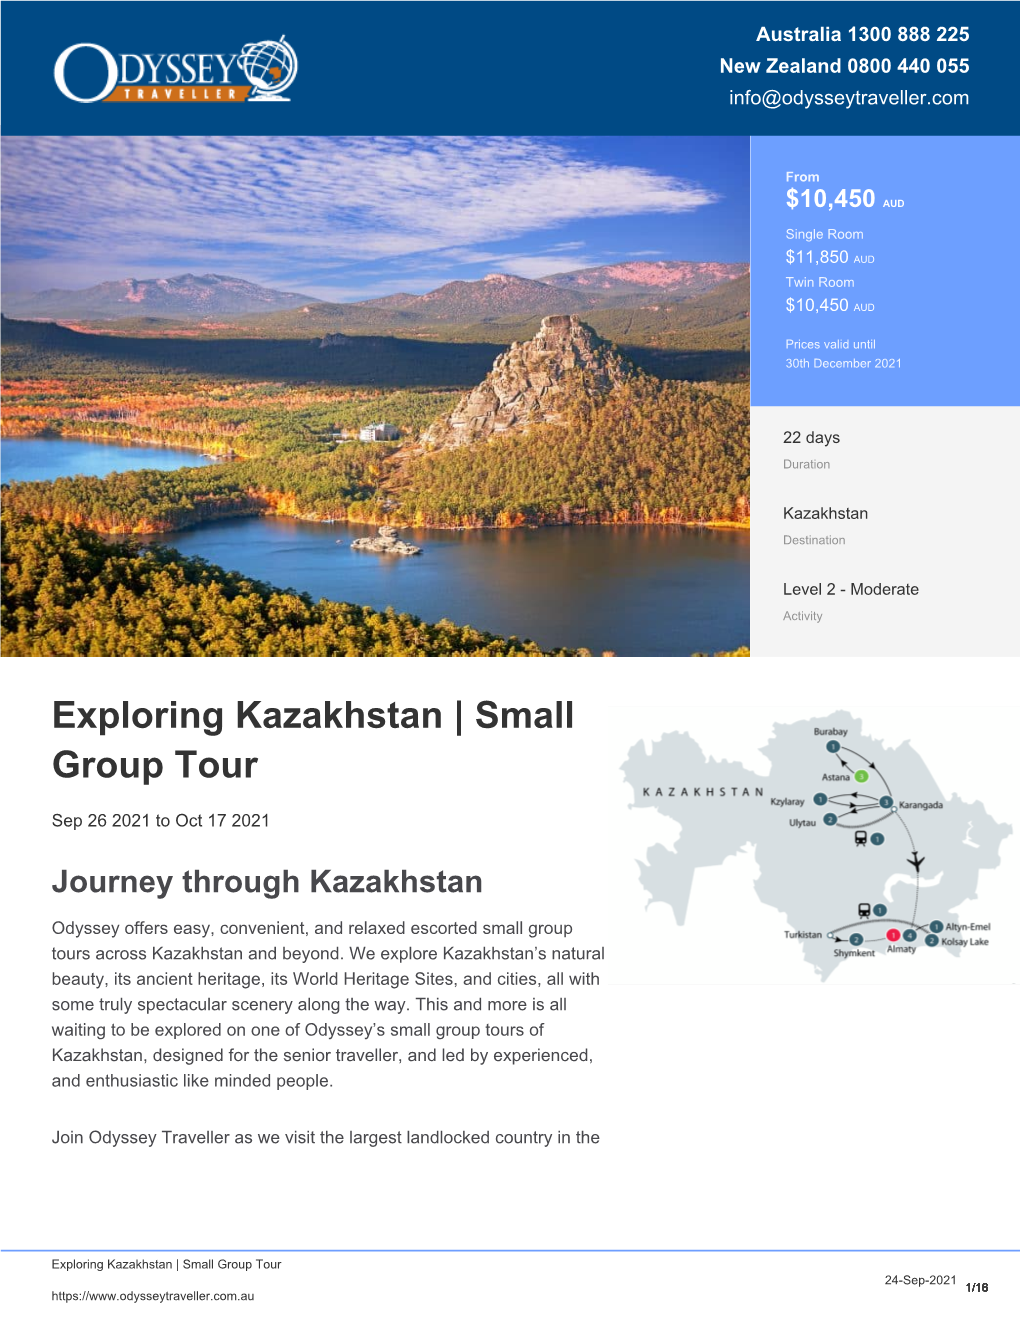 Exploring Kazakhstan | Small Group Tour for Seniors | Odyssey Traveller